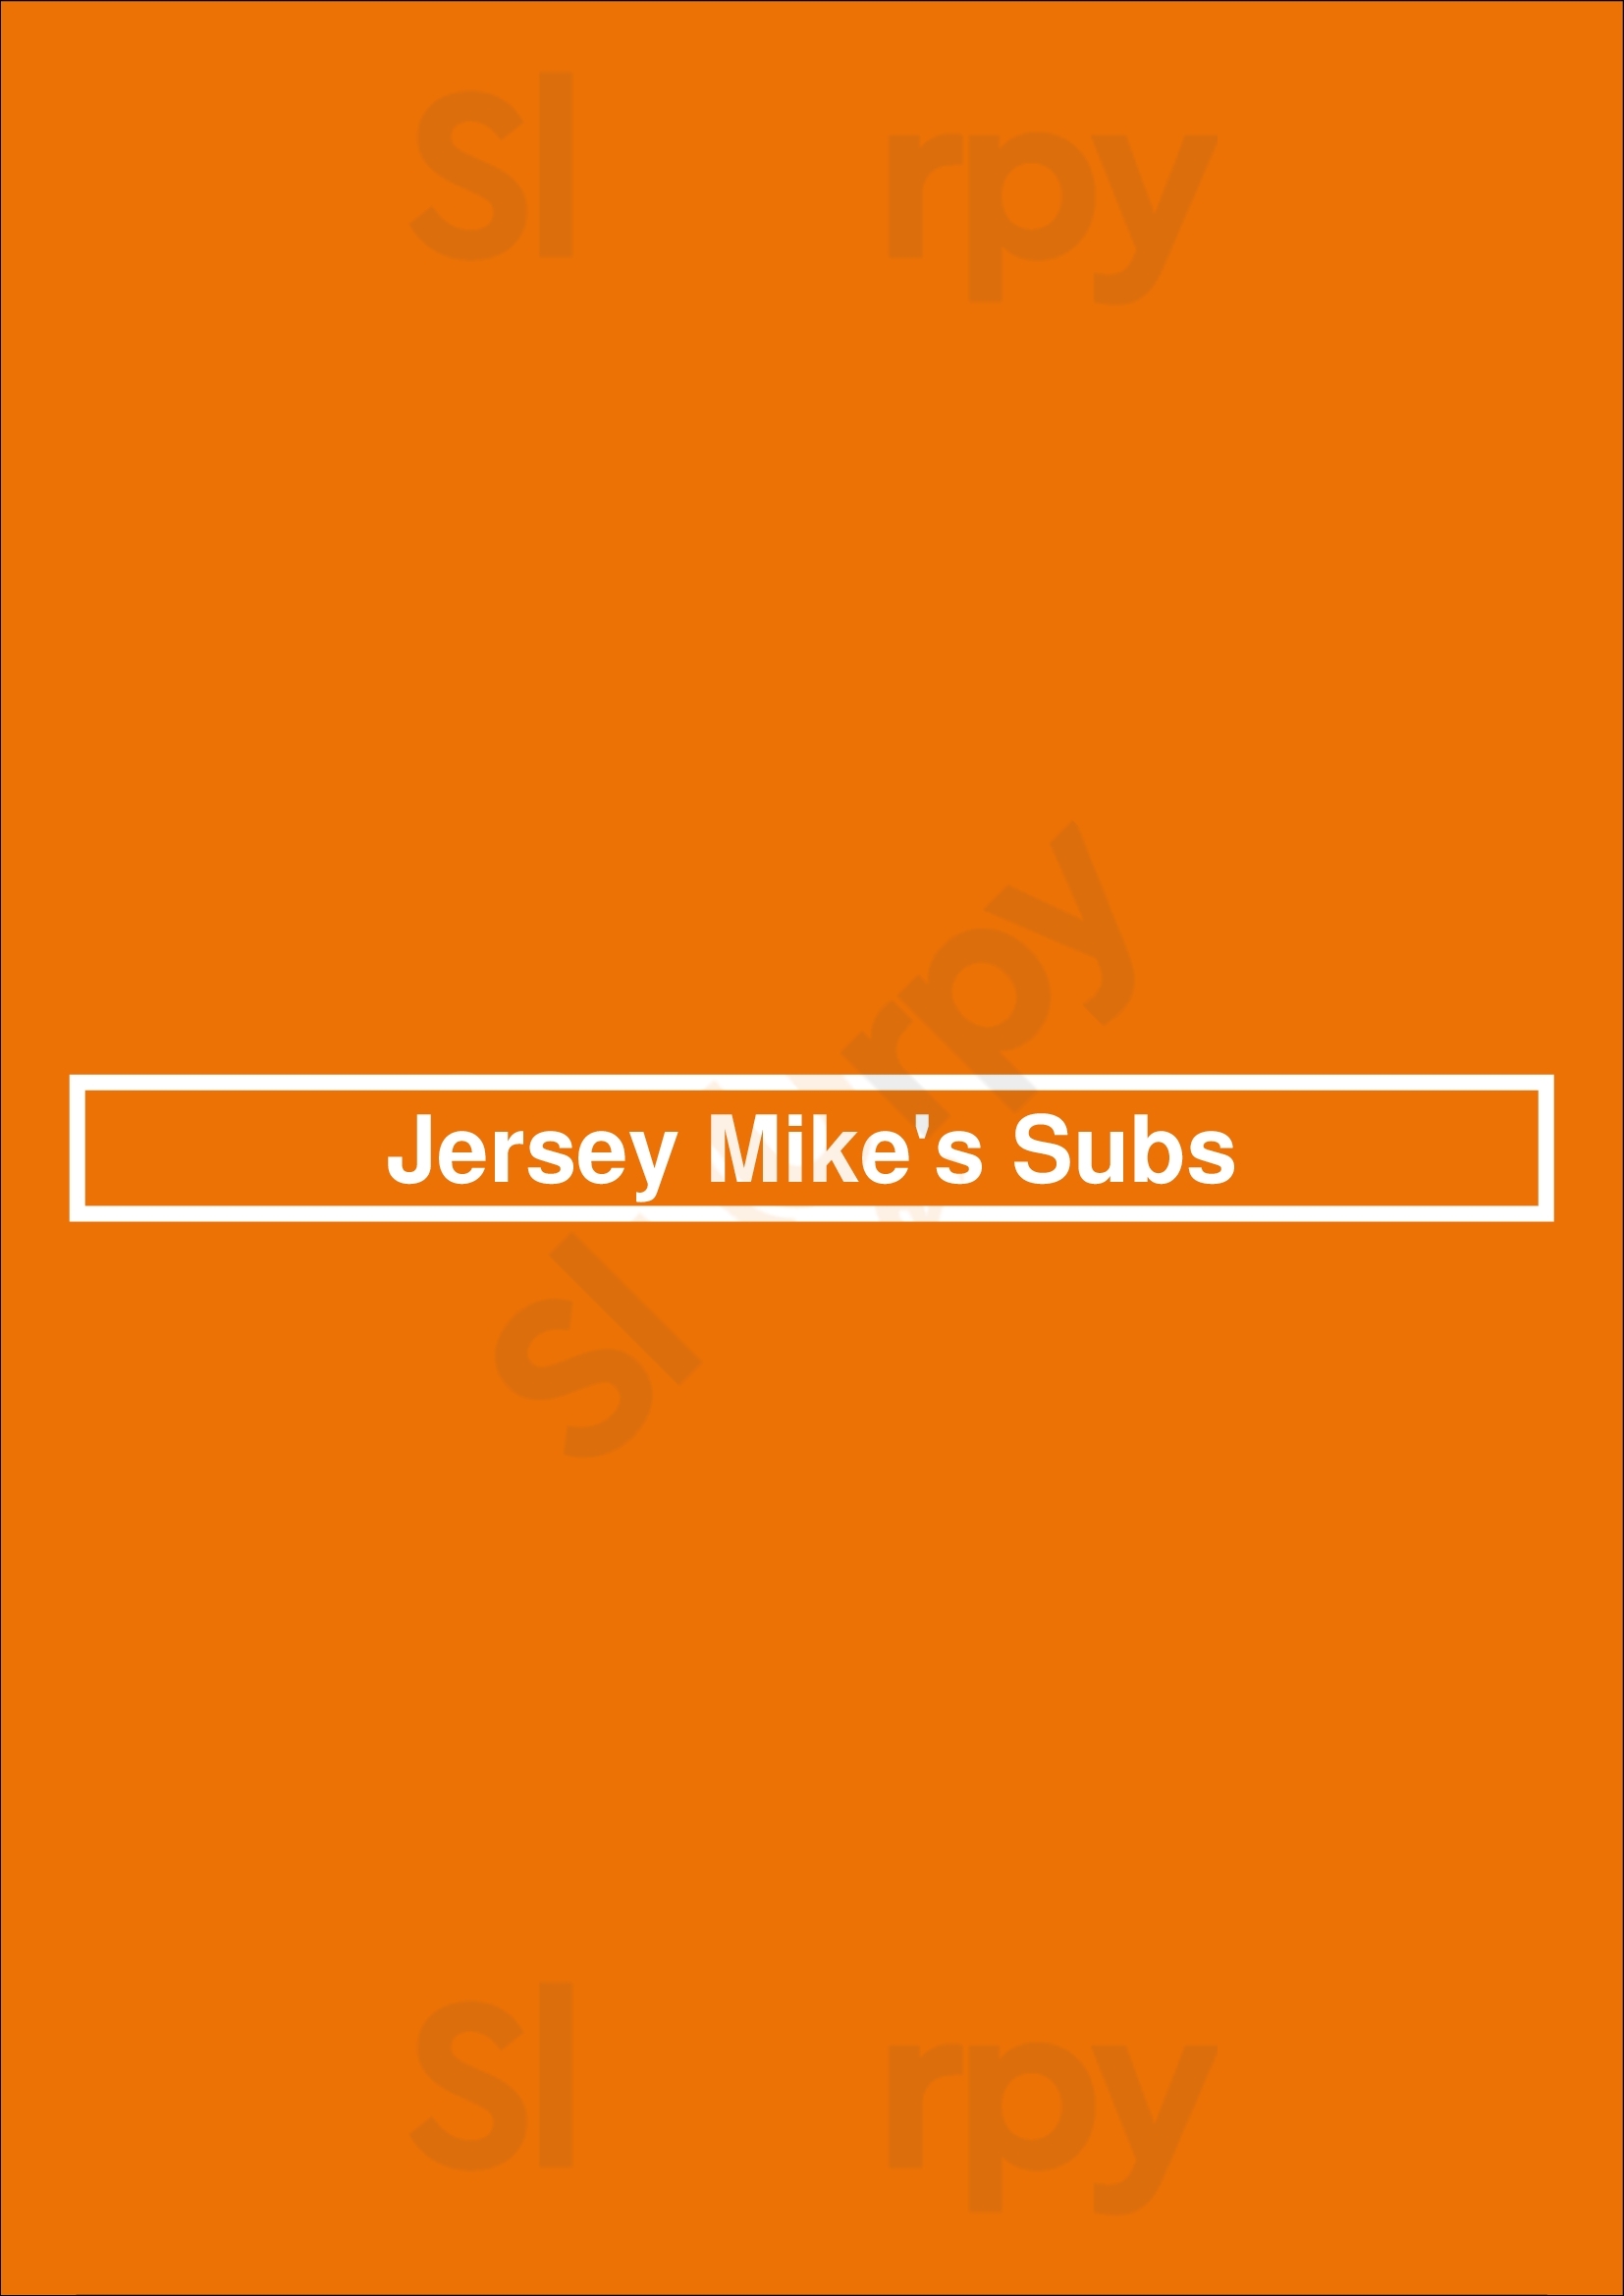 Jersey Mike's Subs Newport Beach Menu - 1